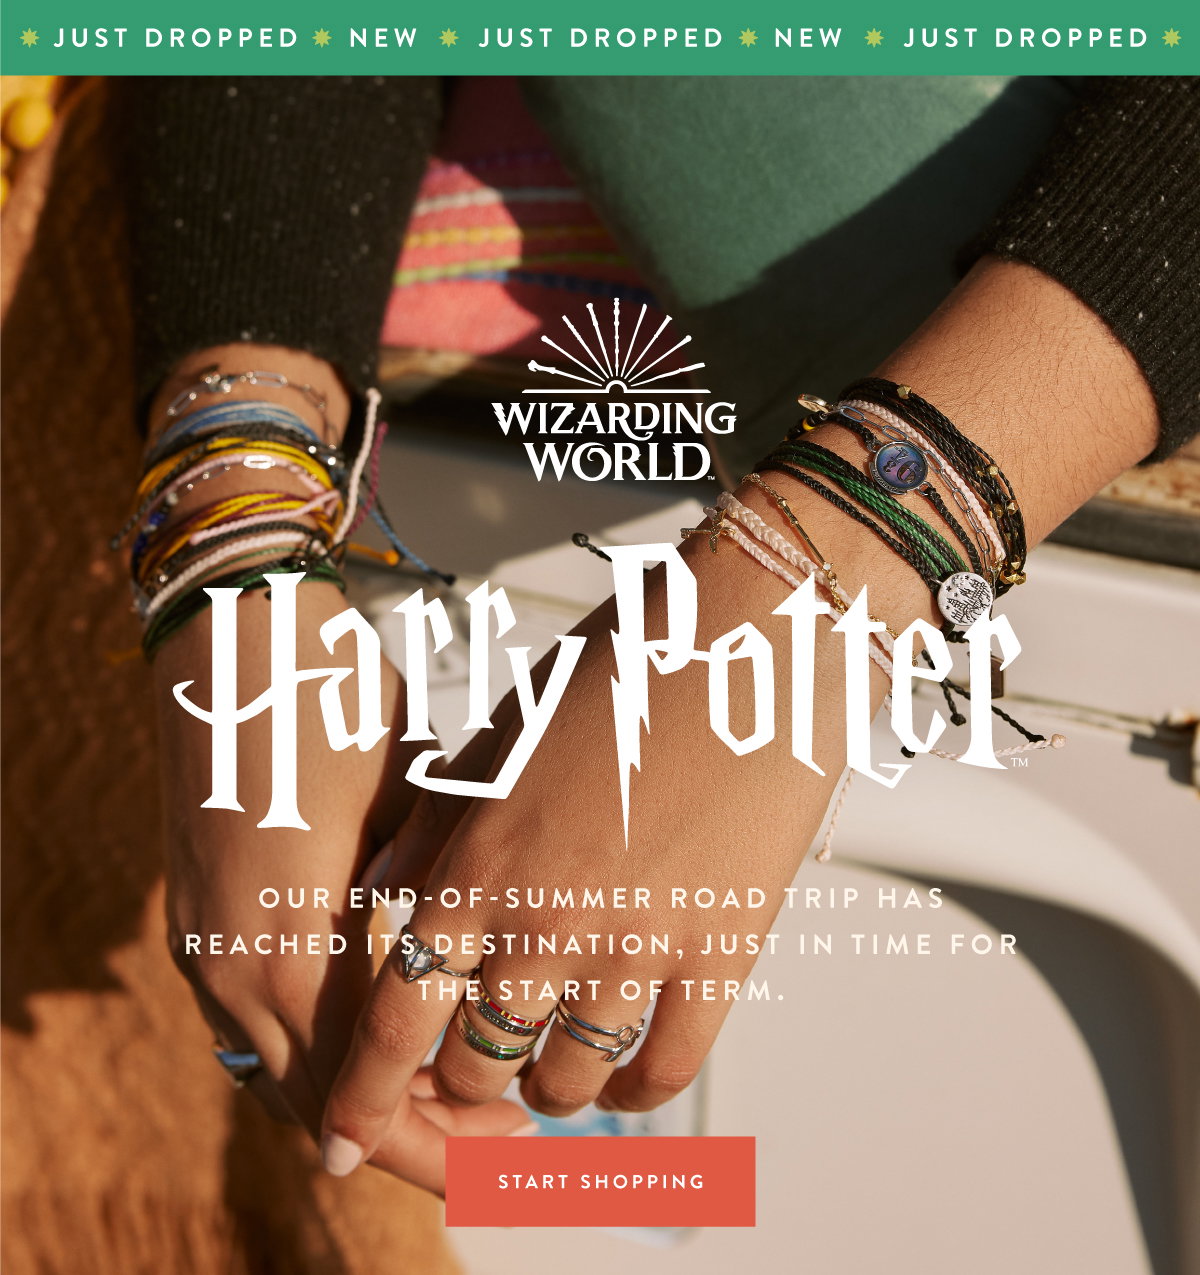 Harry Potter Puravida Slytherin Charm Bracelet - Boutique Harry Potter